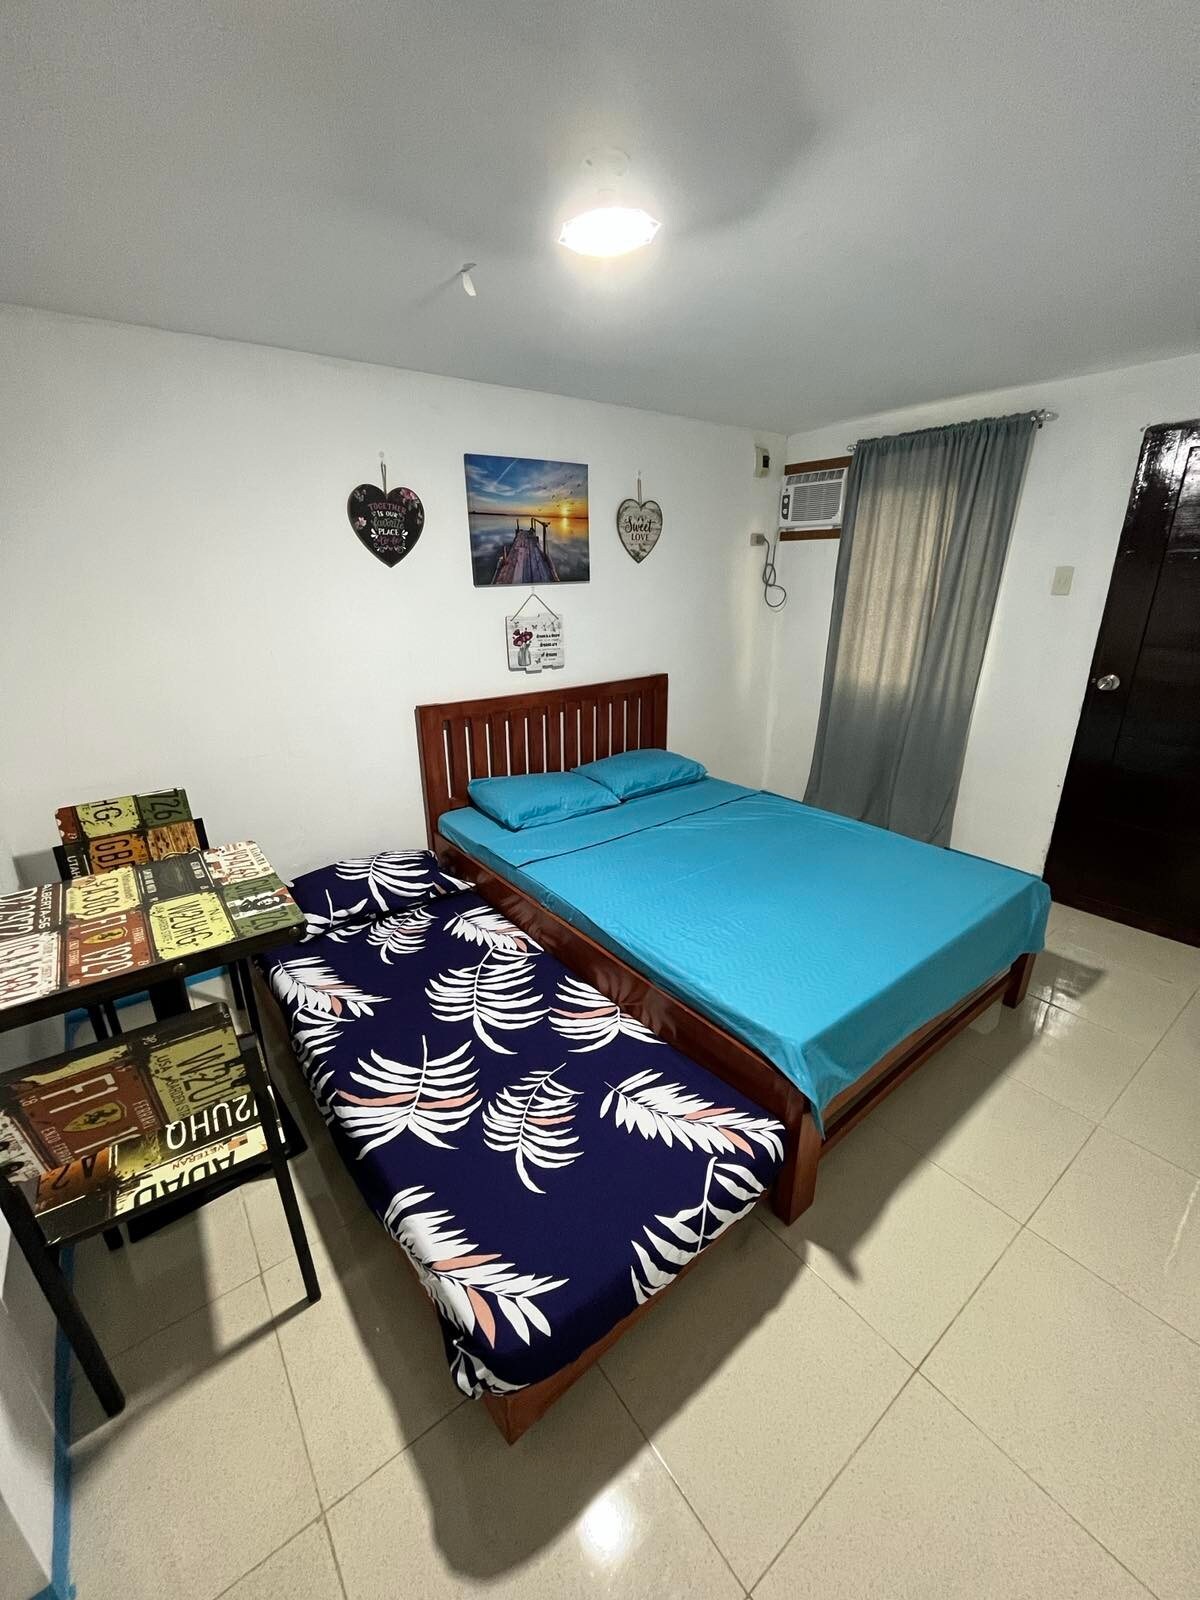 Lingayen Baywalk Rooms for Rent